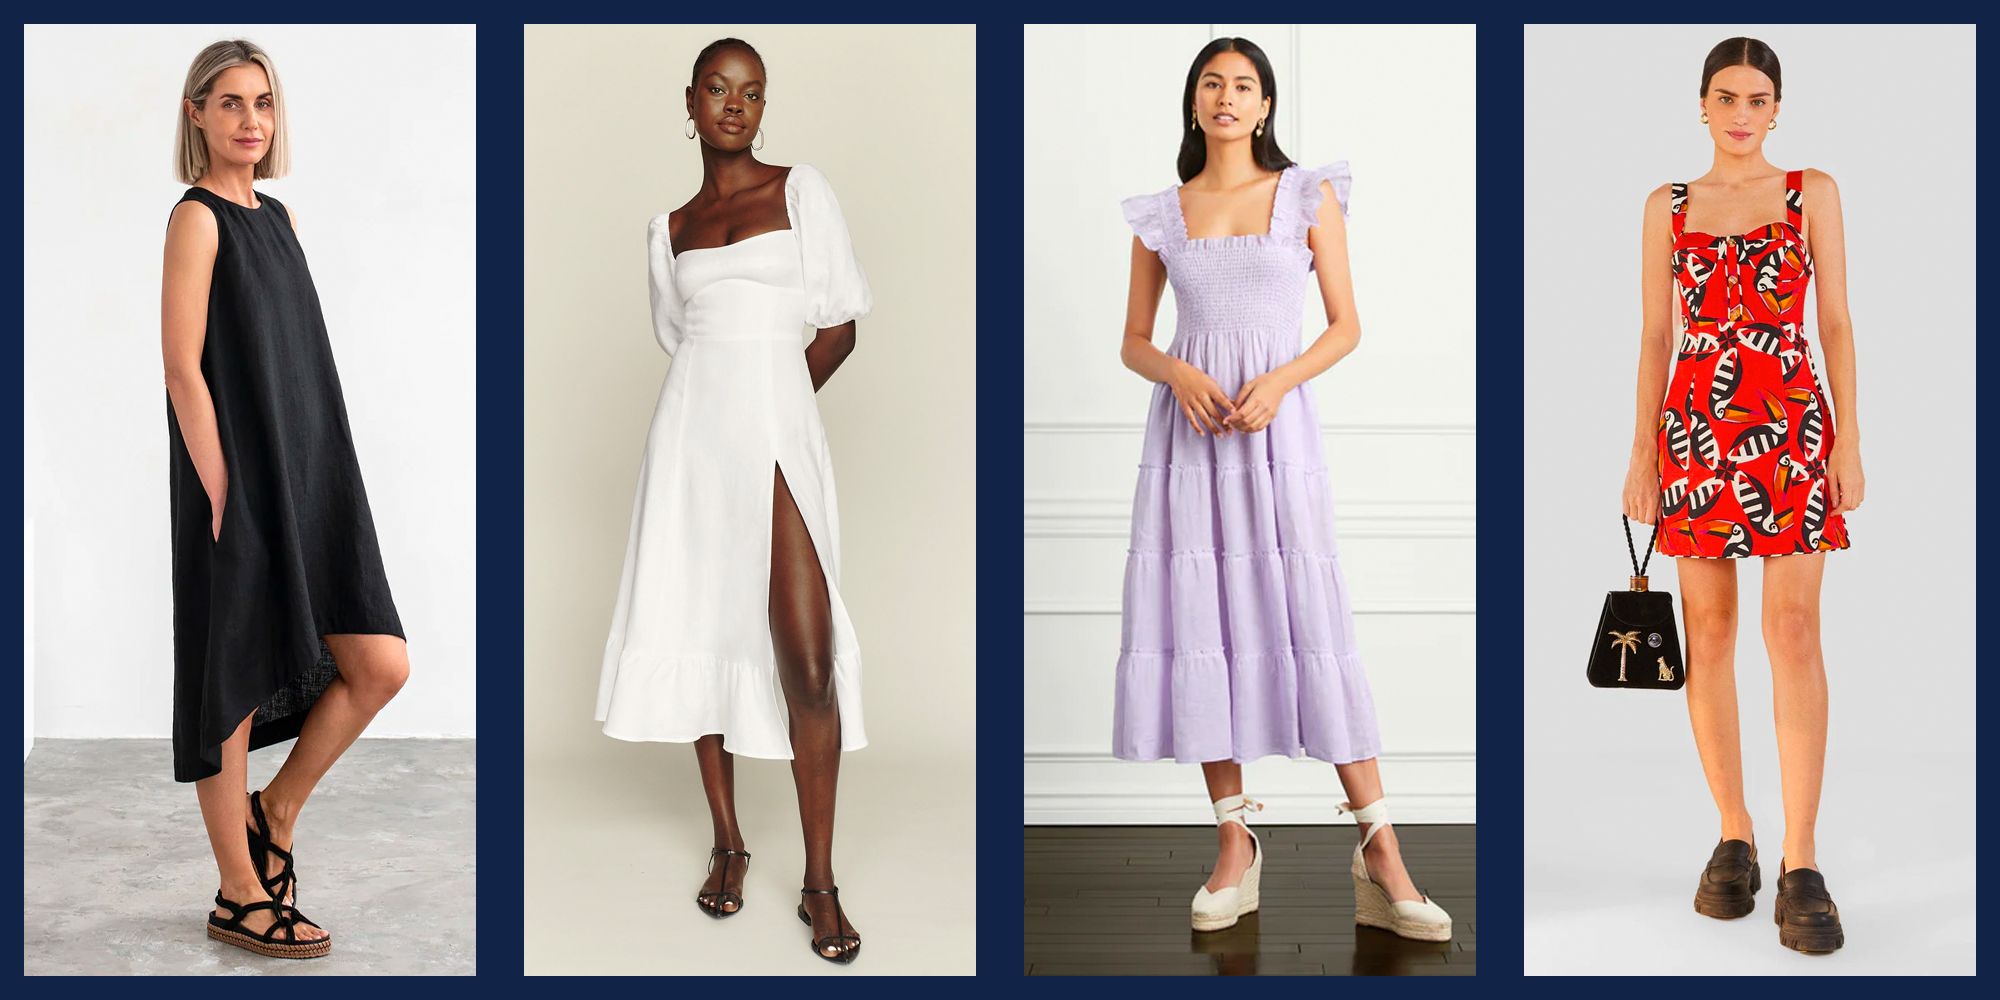 Women's 100% Linen Dresses | Nordstrom